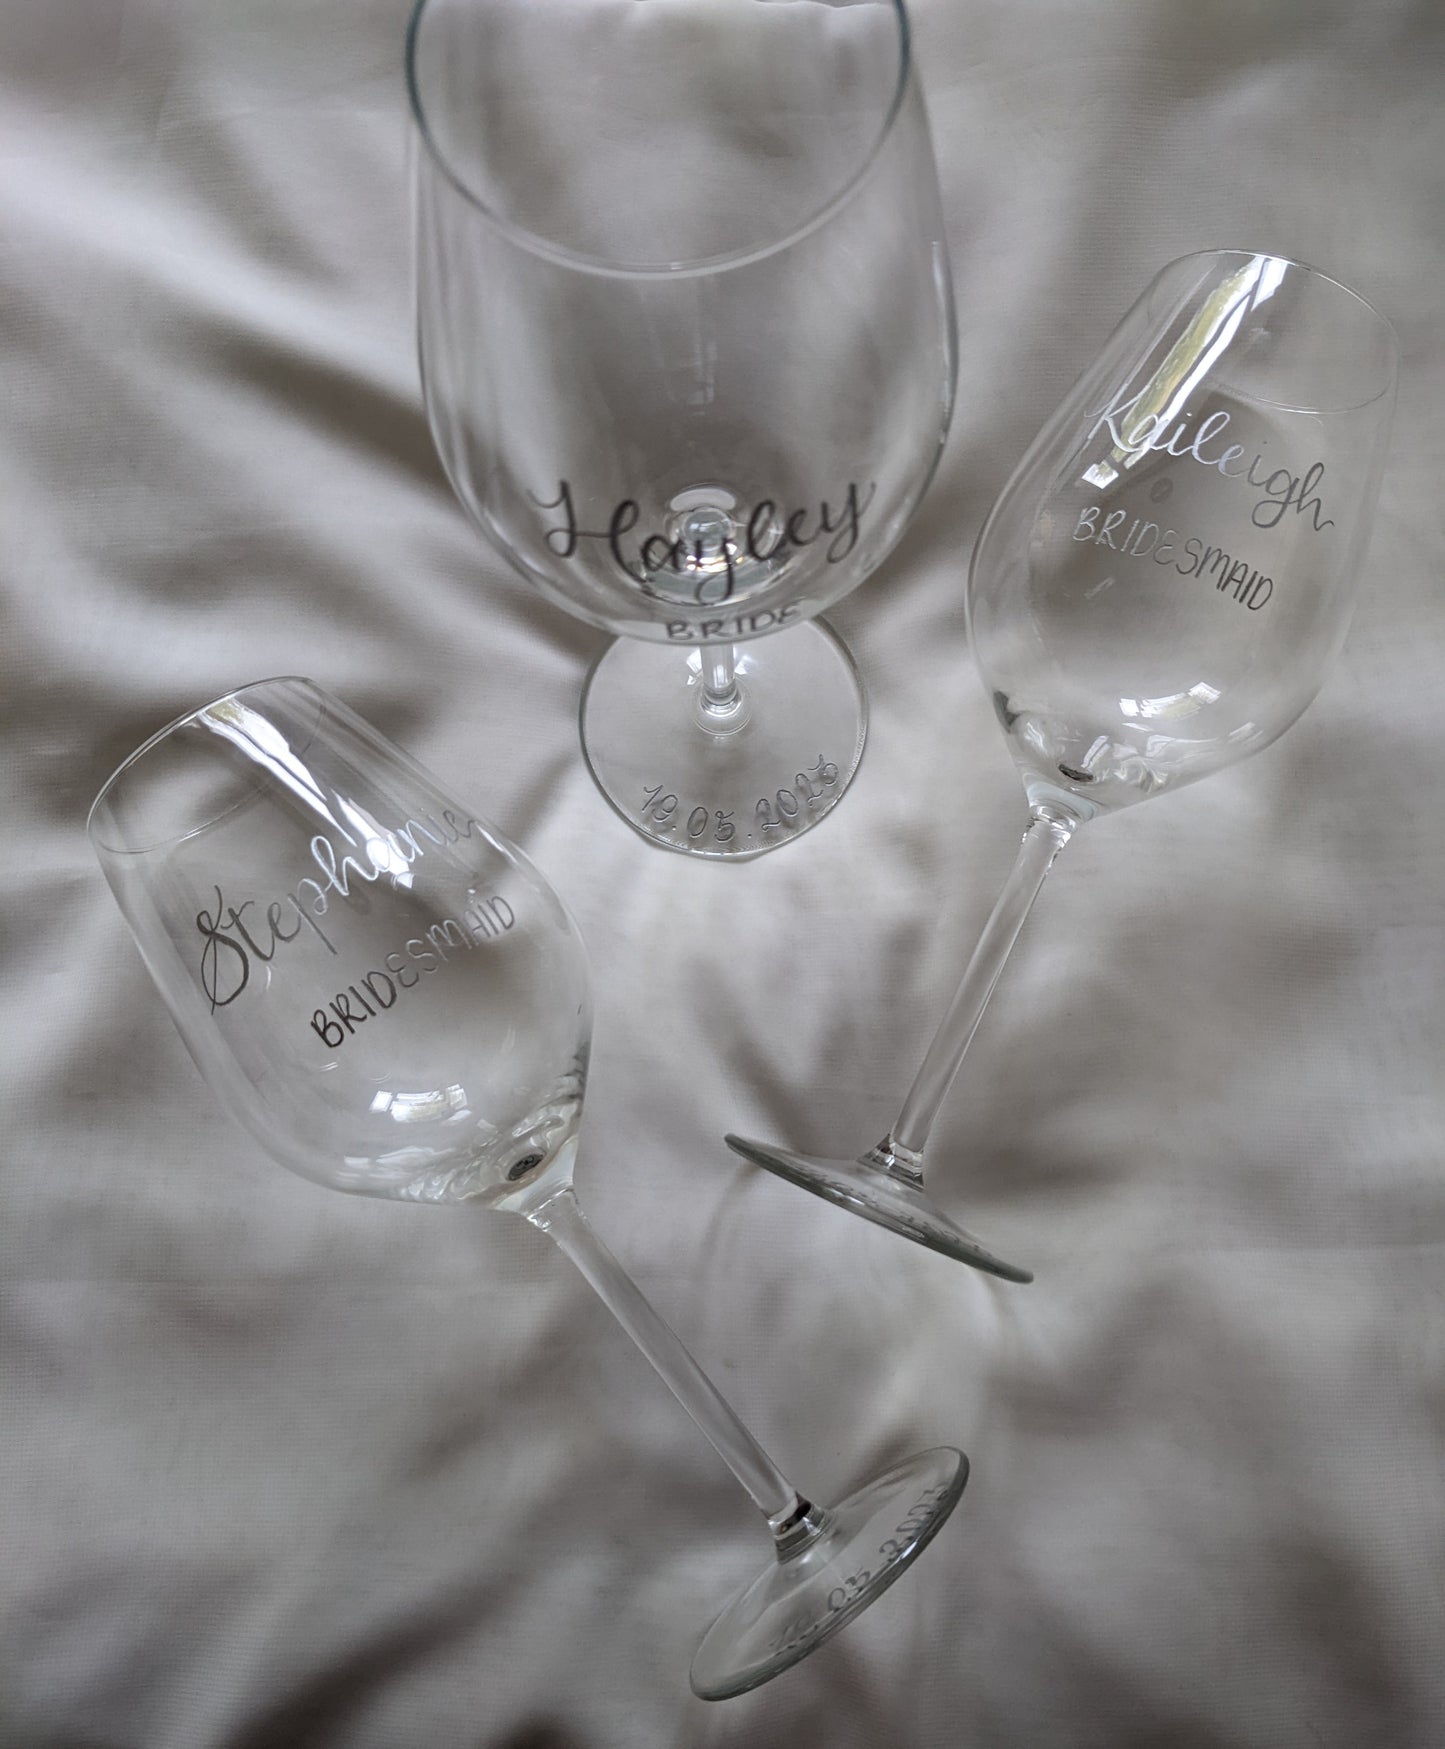 Engraved glasses